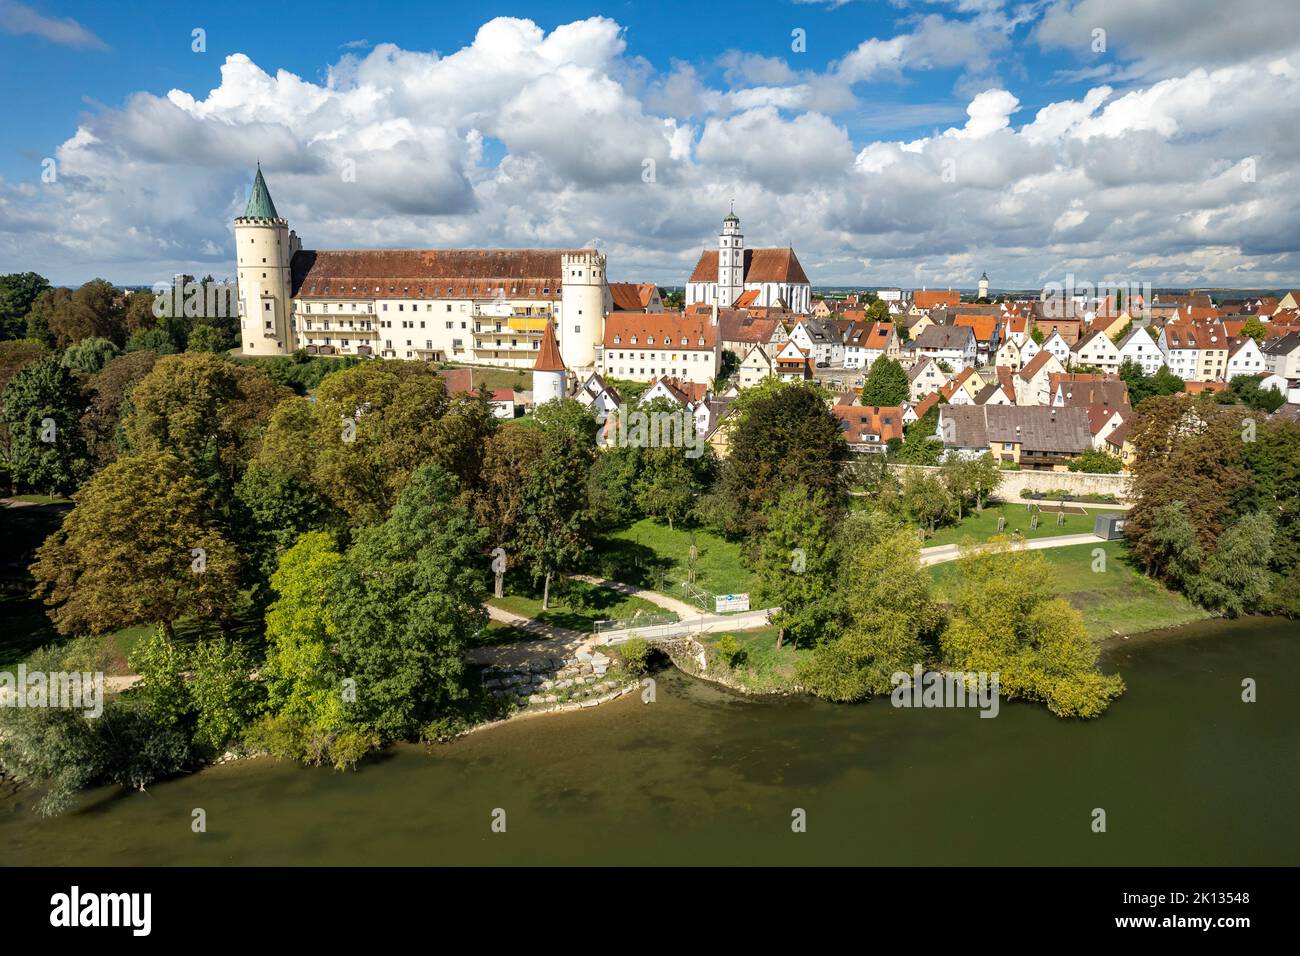 Luftbild Lauingen an der Donau mit dem ehemaligen Schloss Lauingen und der Stadtpfarrkirche St. Martin, Bayern, Deutschland | vue aérienne de Lauinge Banque D'Images